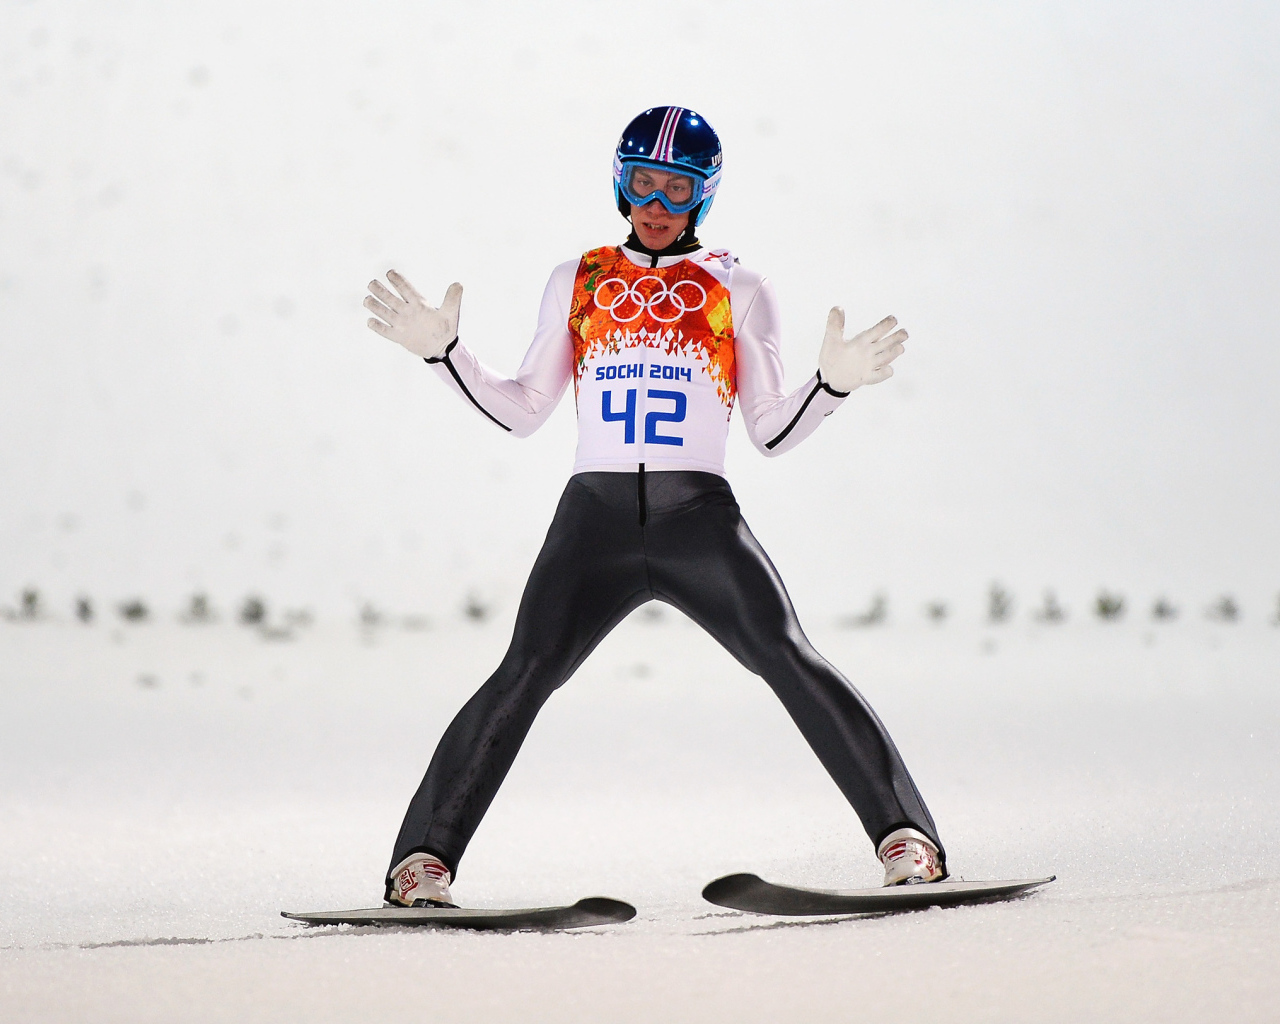 Австрийский прыгун с трамплина  Томас Дитхарт на олимпиаде в Сочи